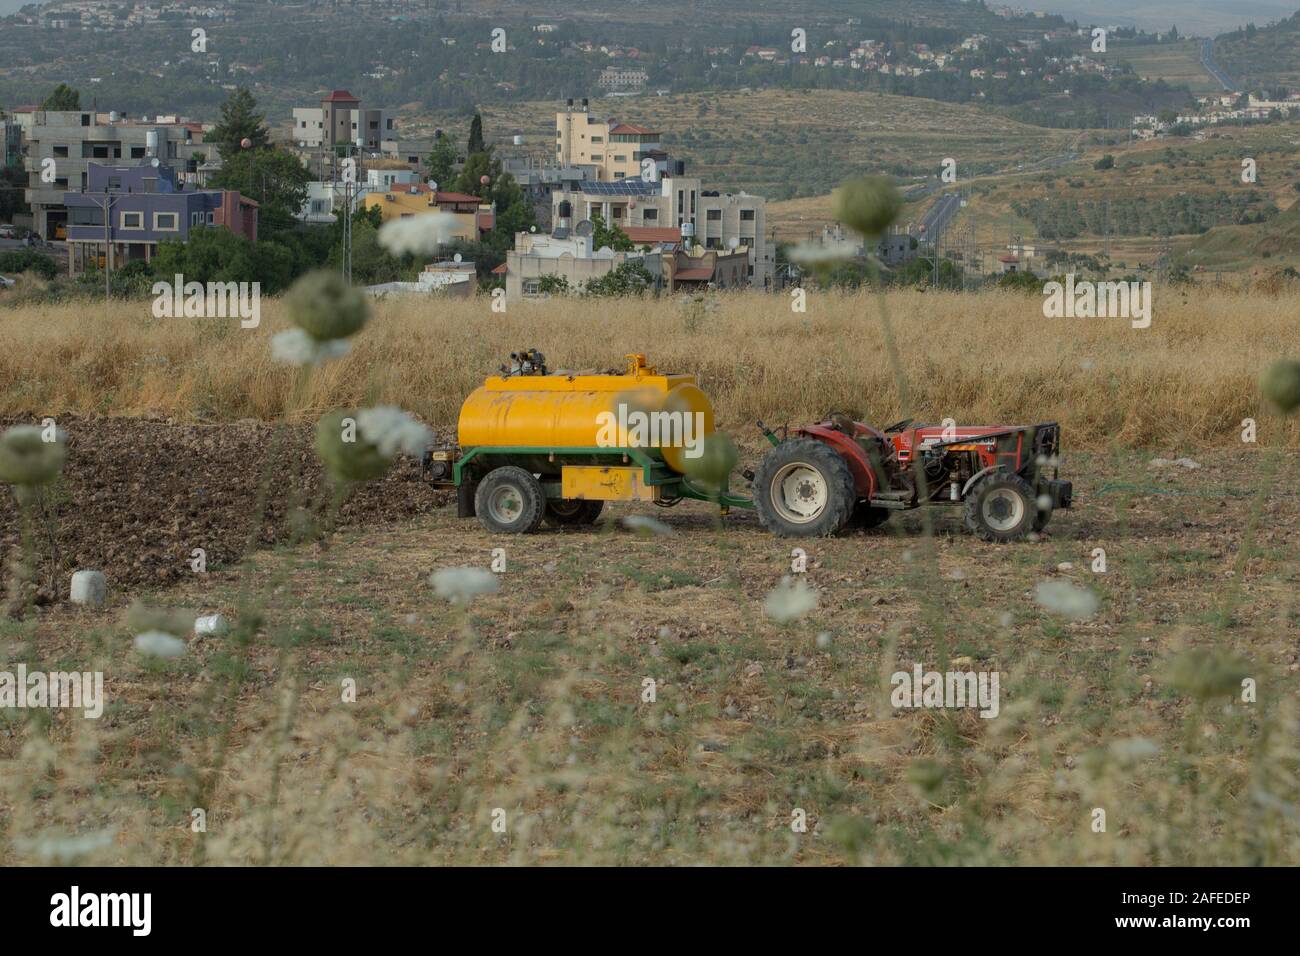 Les résidents palestiniens dans un champ pierreux infestés de mauvaises herbes sèches et les épines photographié en Cisjordanie près de Gidi Junction Palestine / Israël Banque D'Images